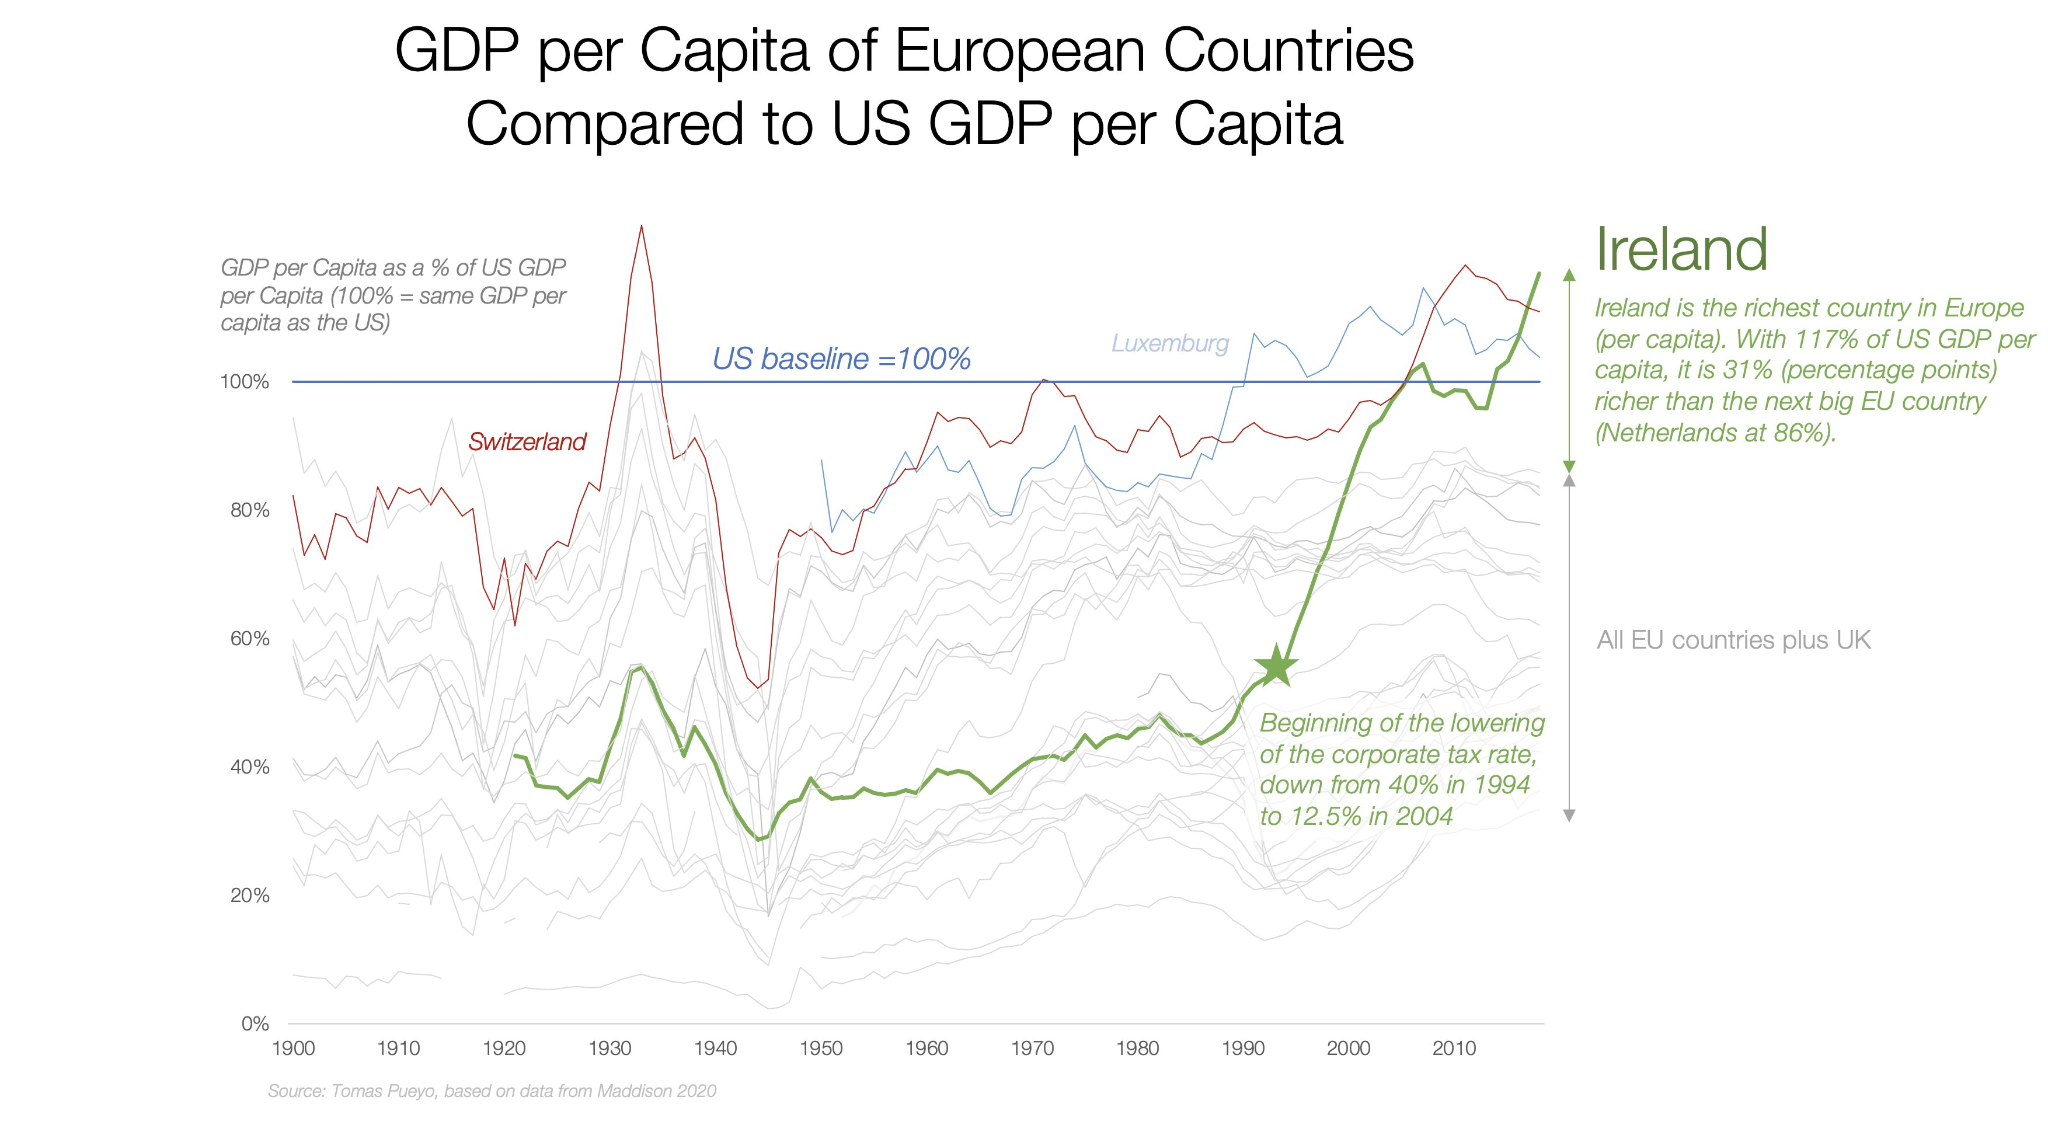 EU vs US GDP per capita, journal of wild culture ©2021